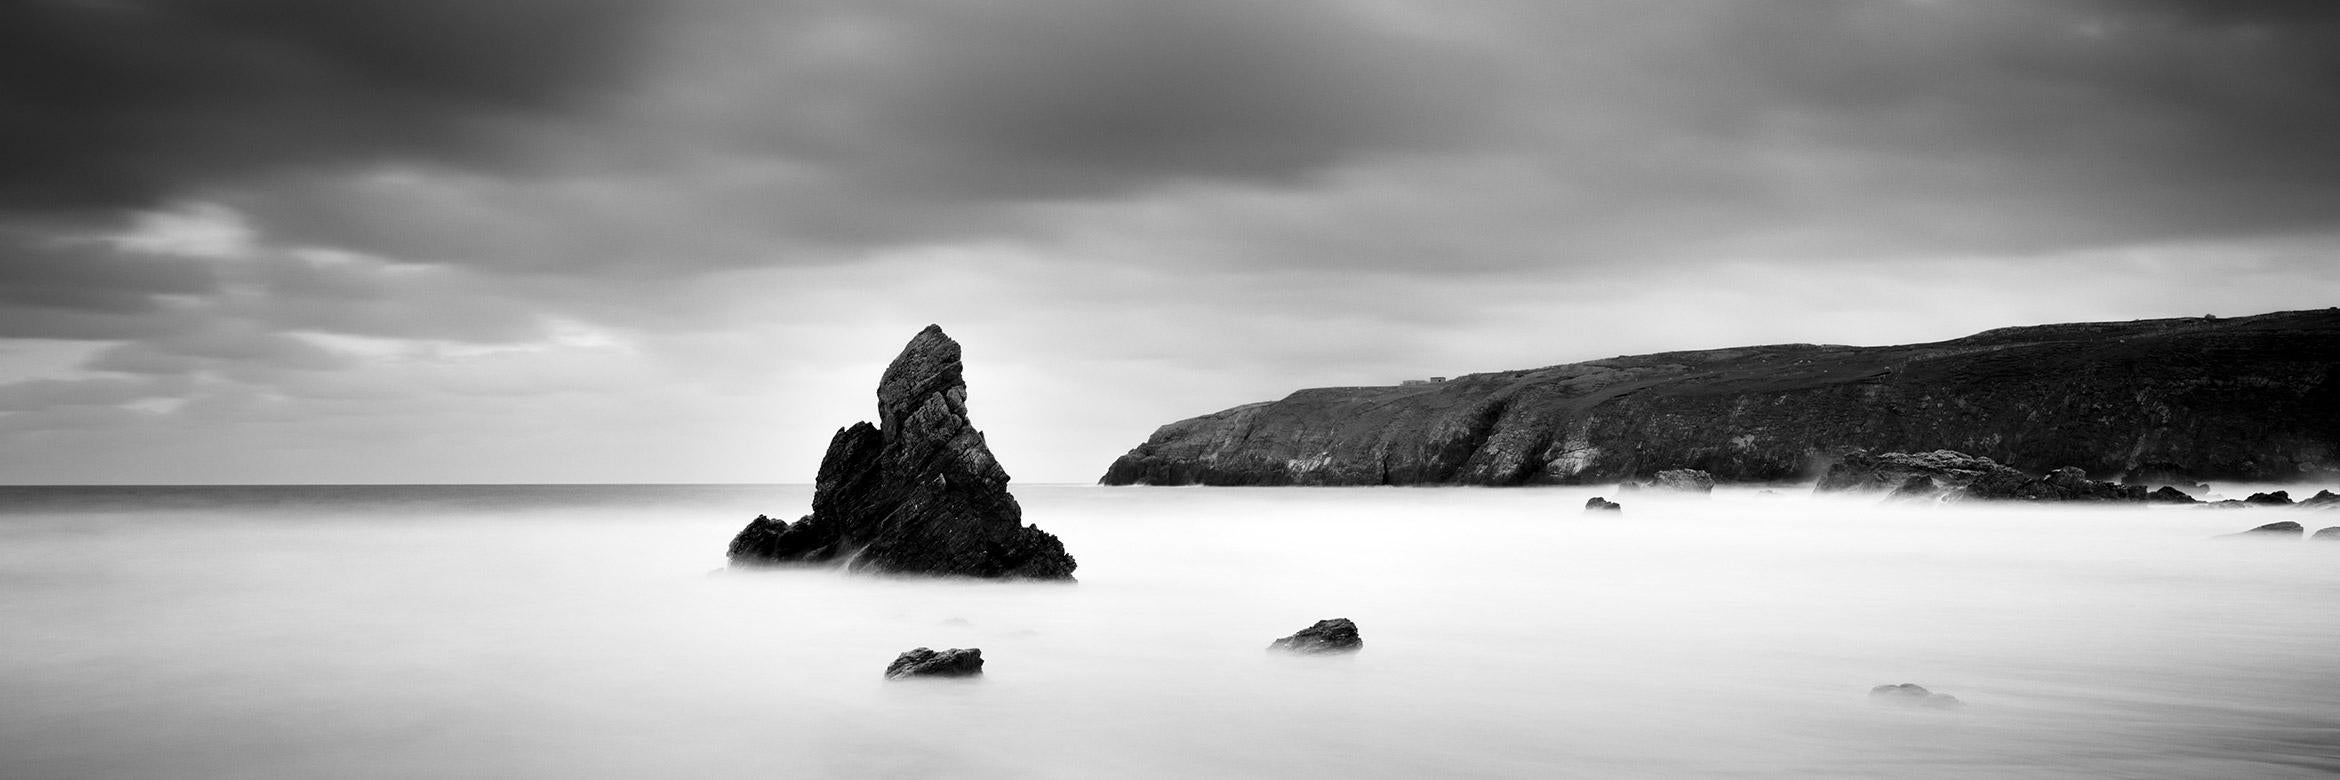 Sea Stack Panorama, rivage, Écosse, photographie de paysage en noir et blanc